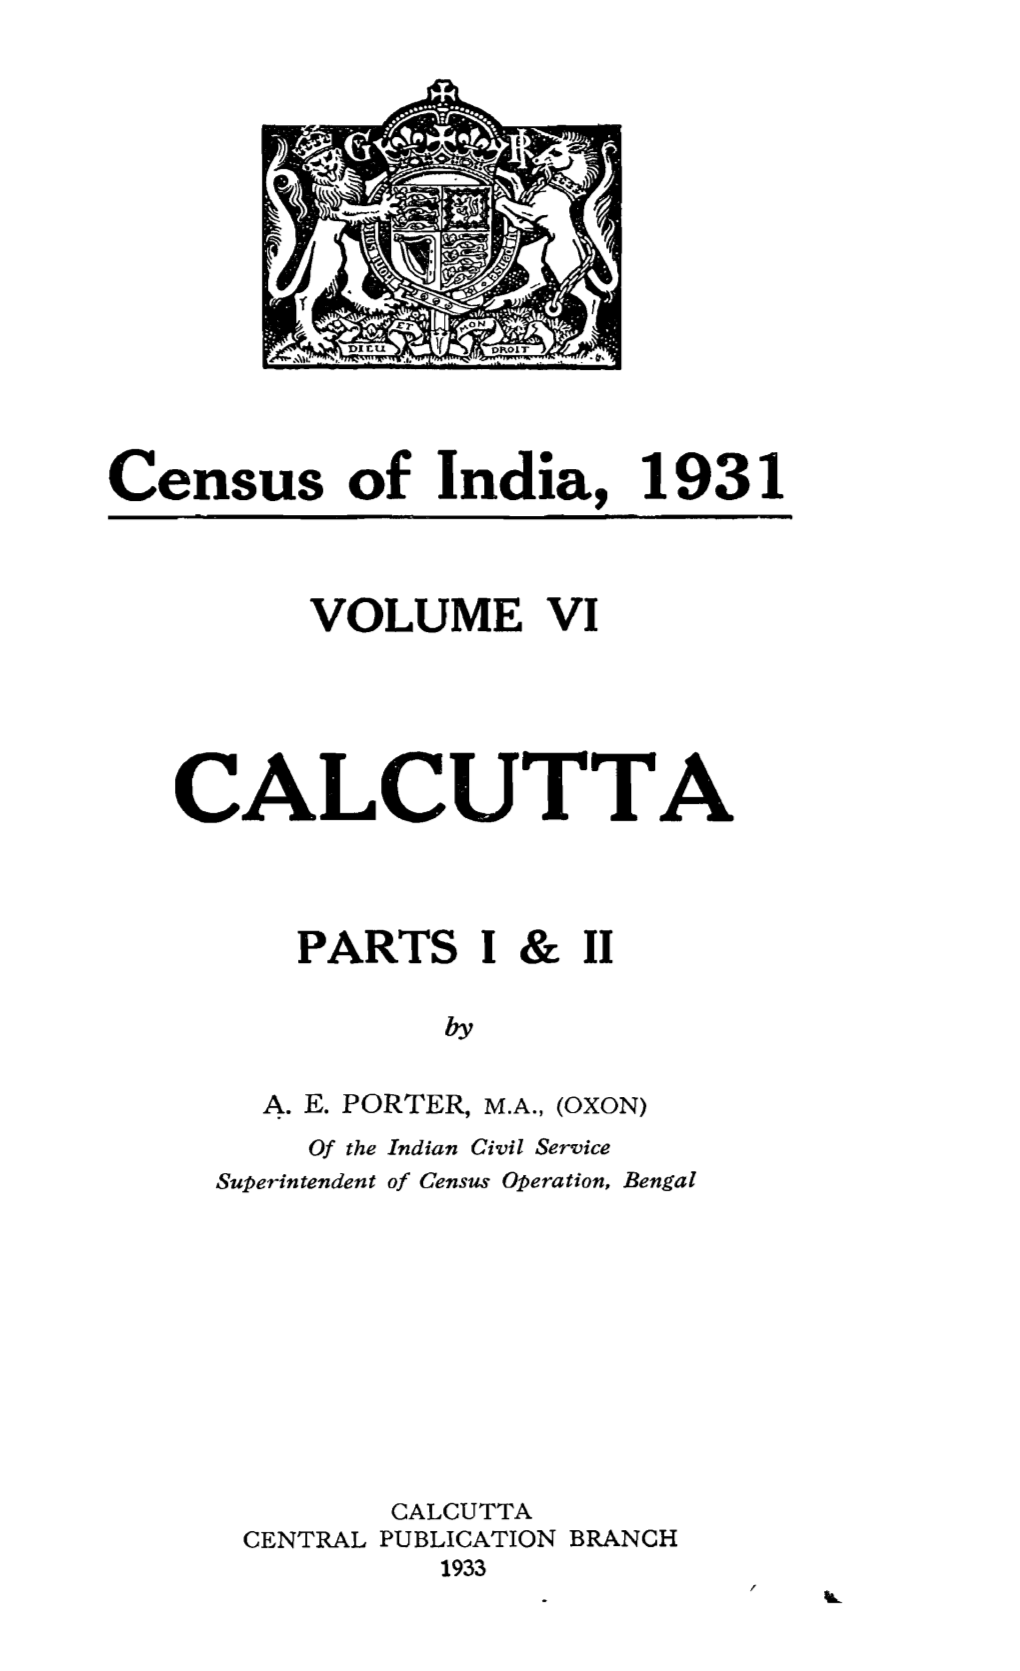 Parts I & II, Calcutta, Vol-VI, West Bengal